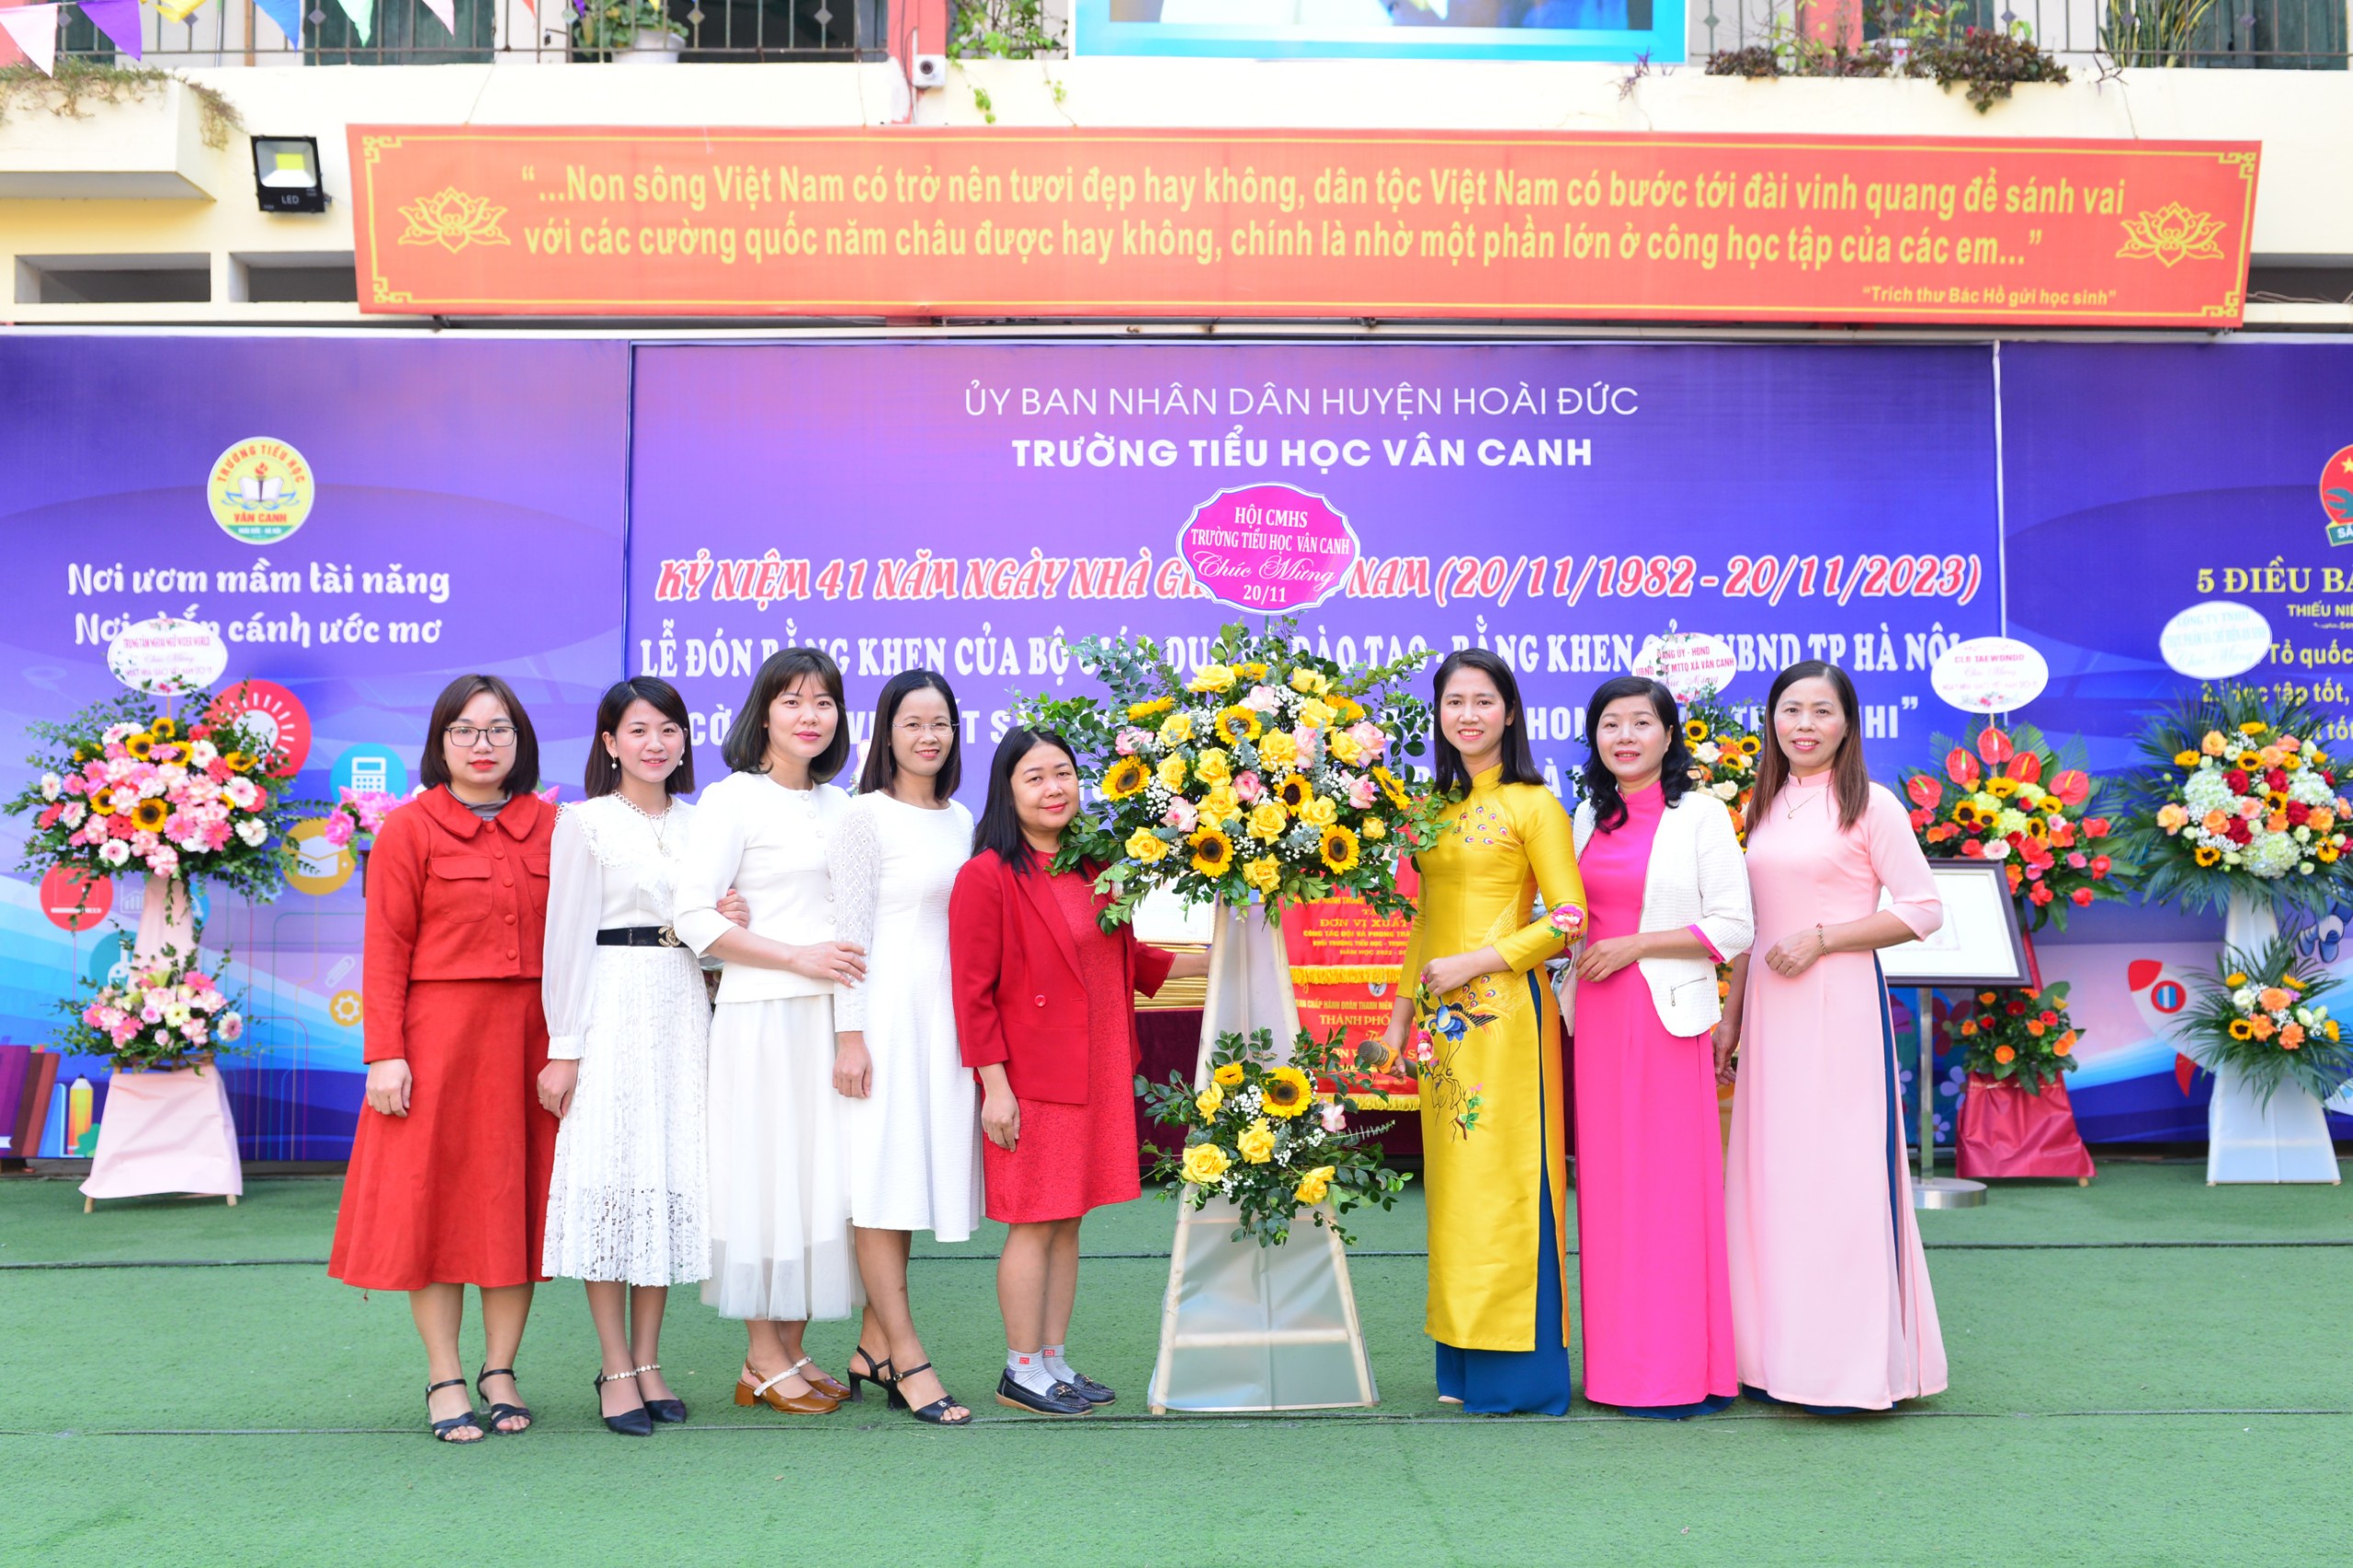 Trường Tiểu học Vân Canh kỉ niệm 41 năm ngày Nhà giáo Việt Nam (20/11/1982 - 20/11/2023).